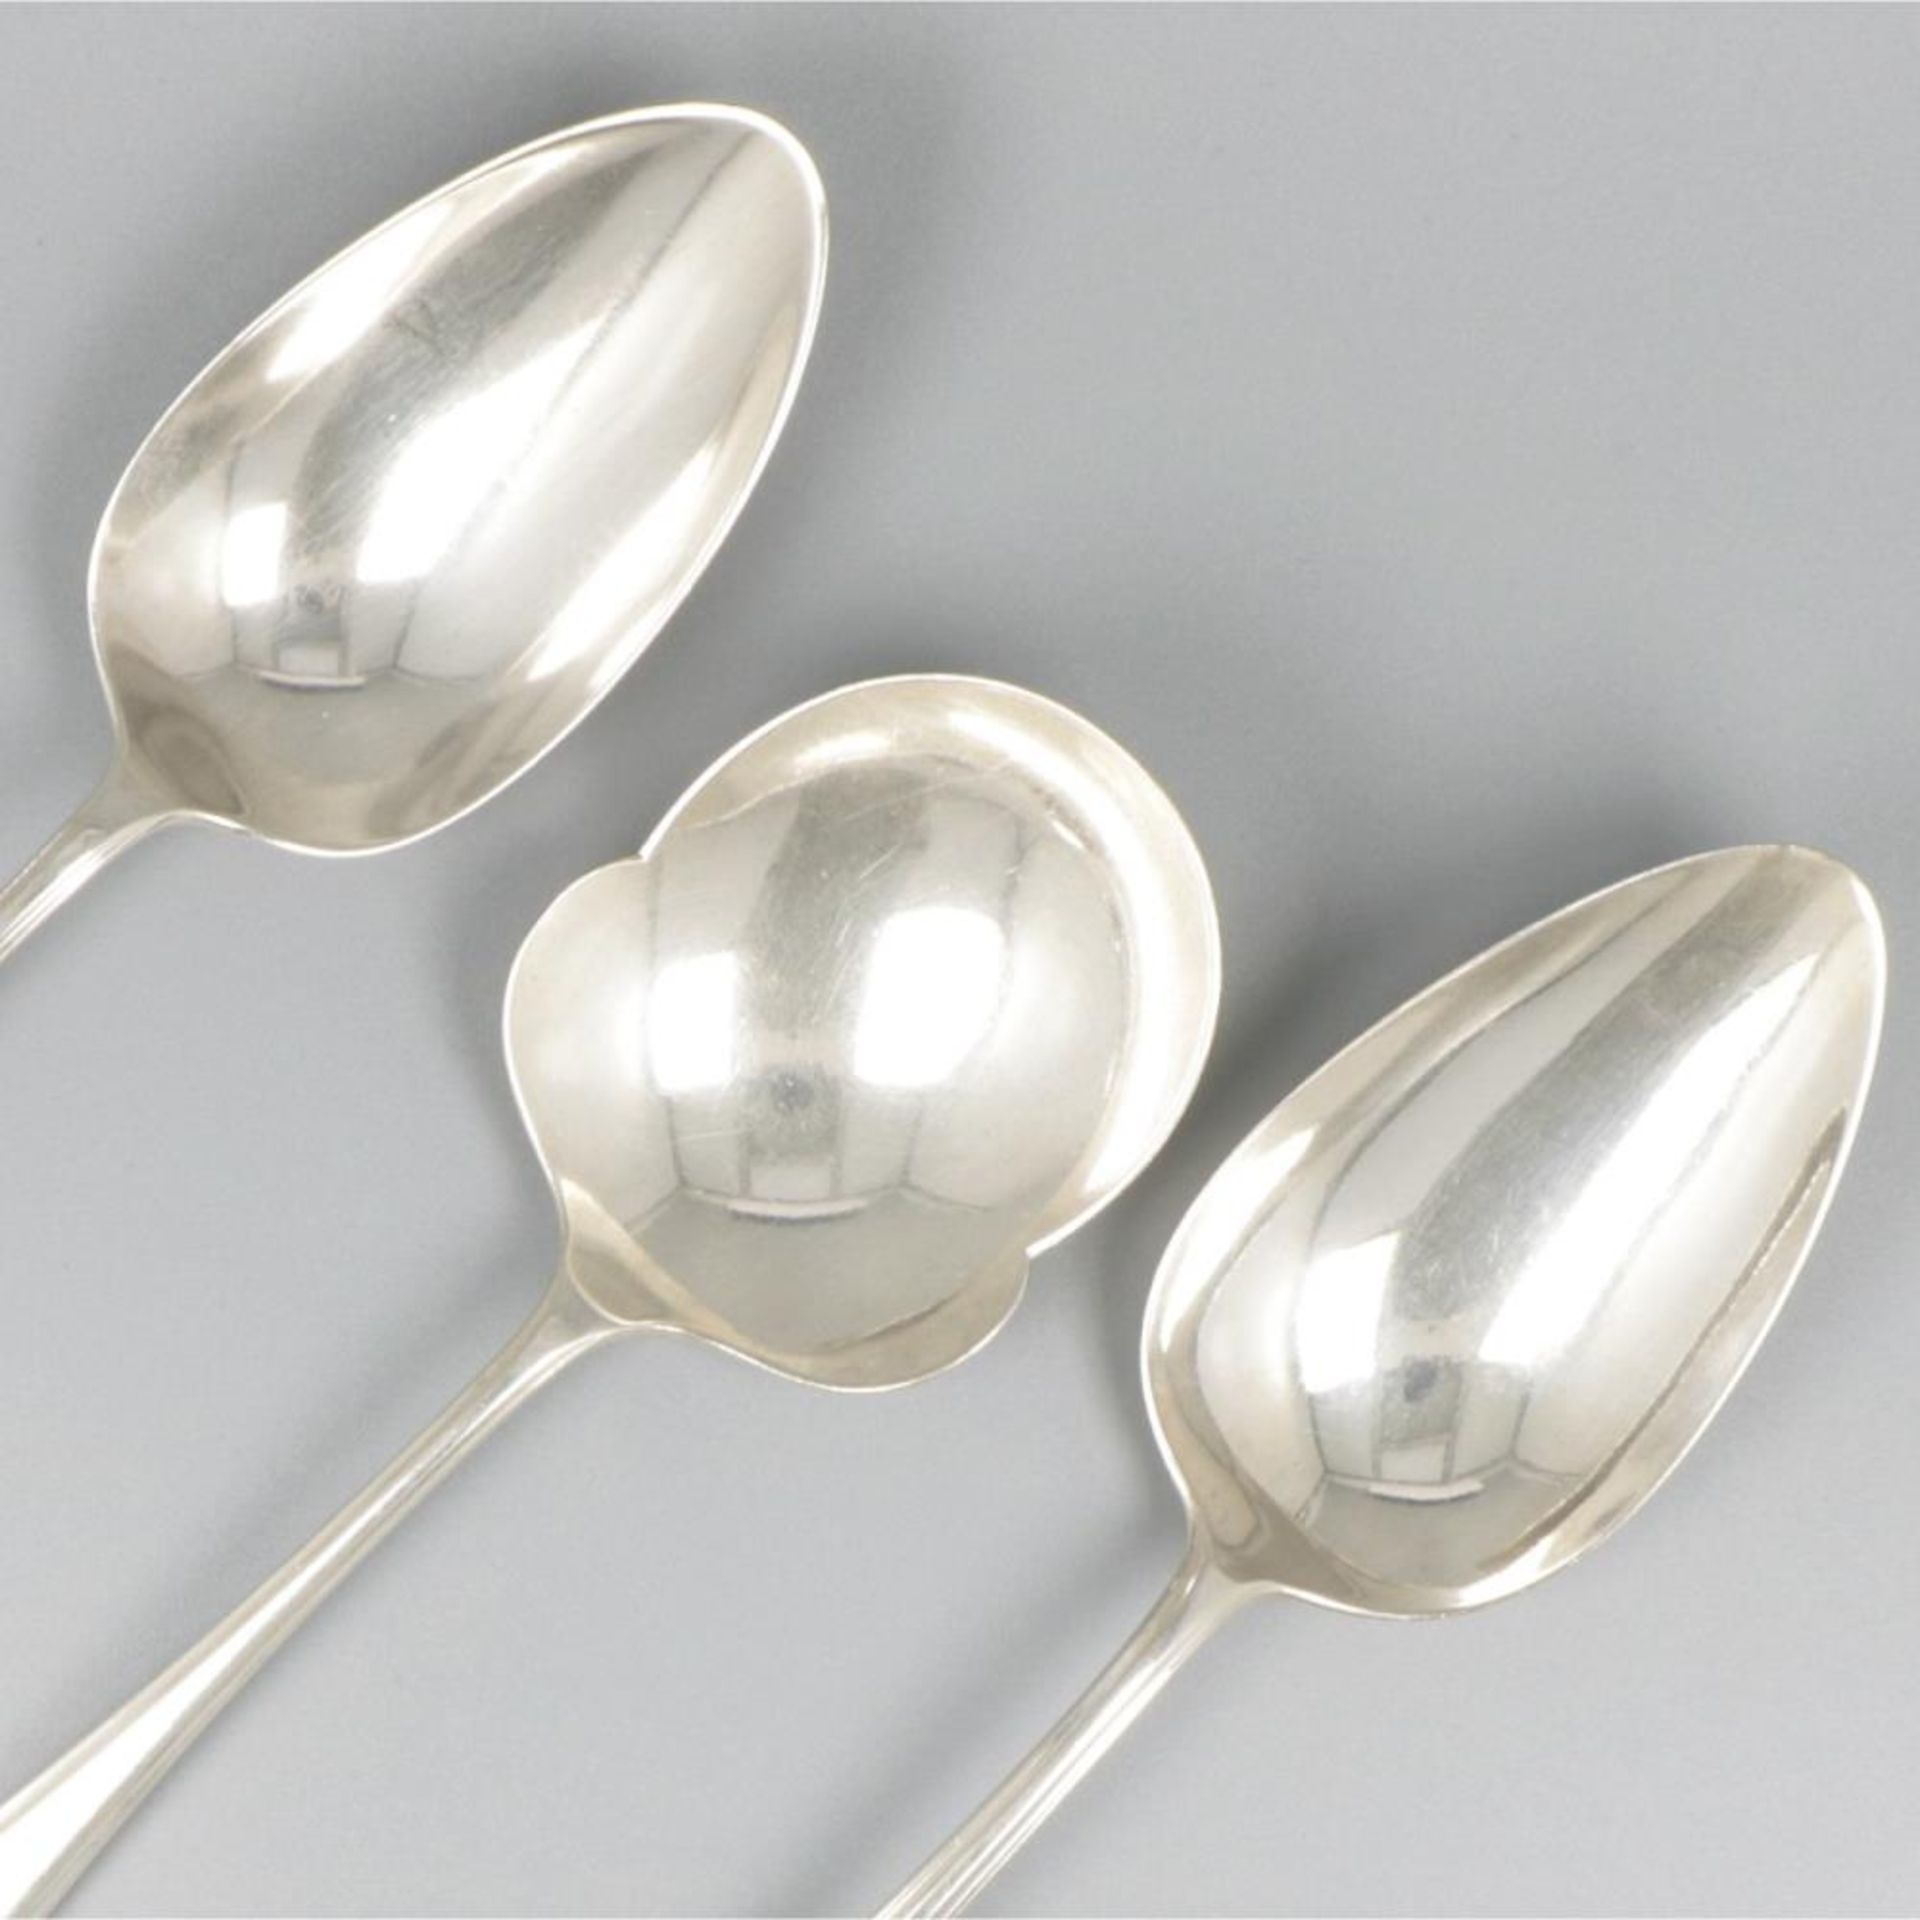 3-piece set of ladles "Hollands Puntfilet" silver. - Image 4 of 7